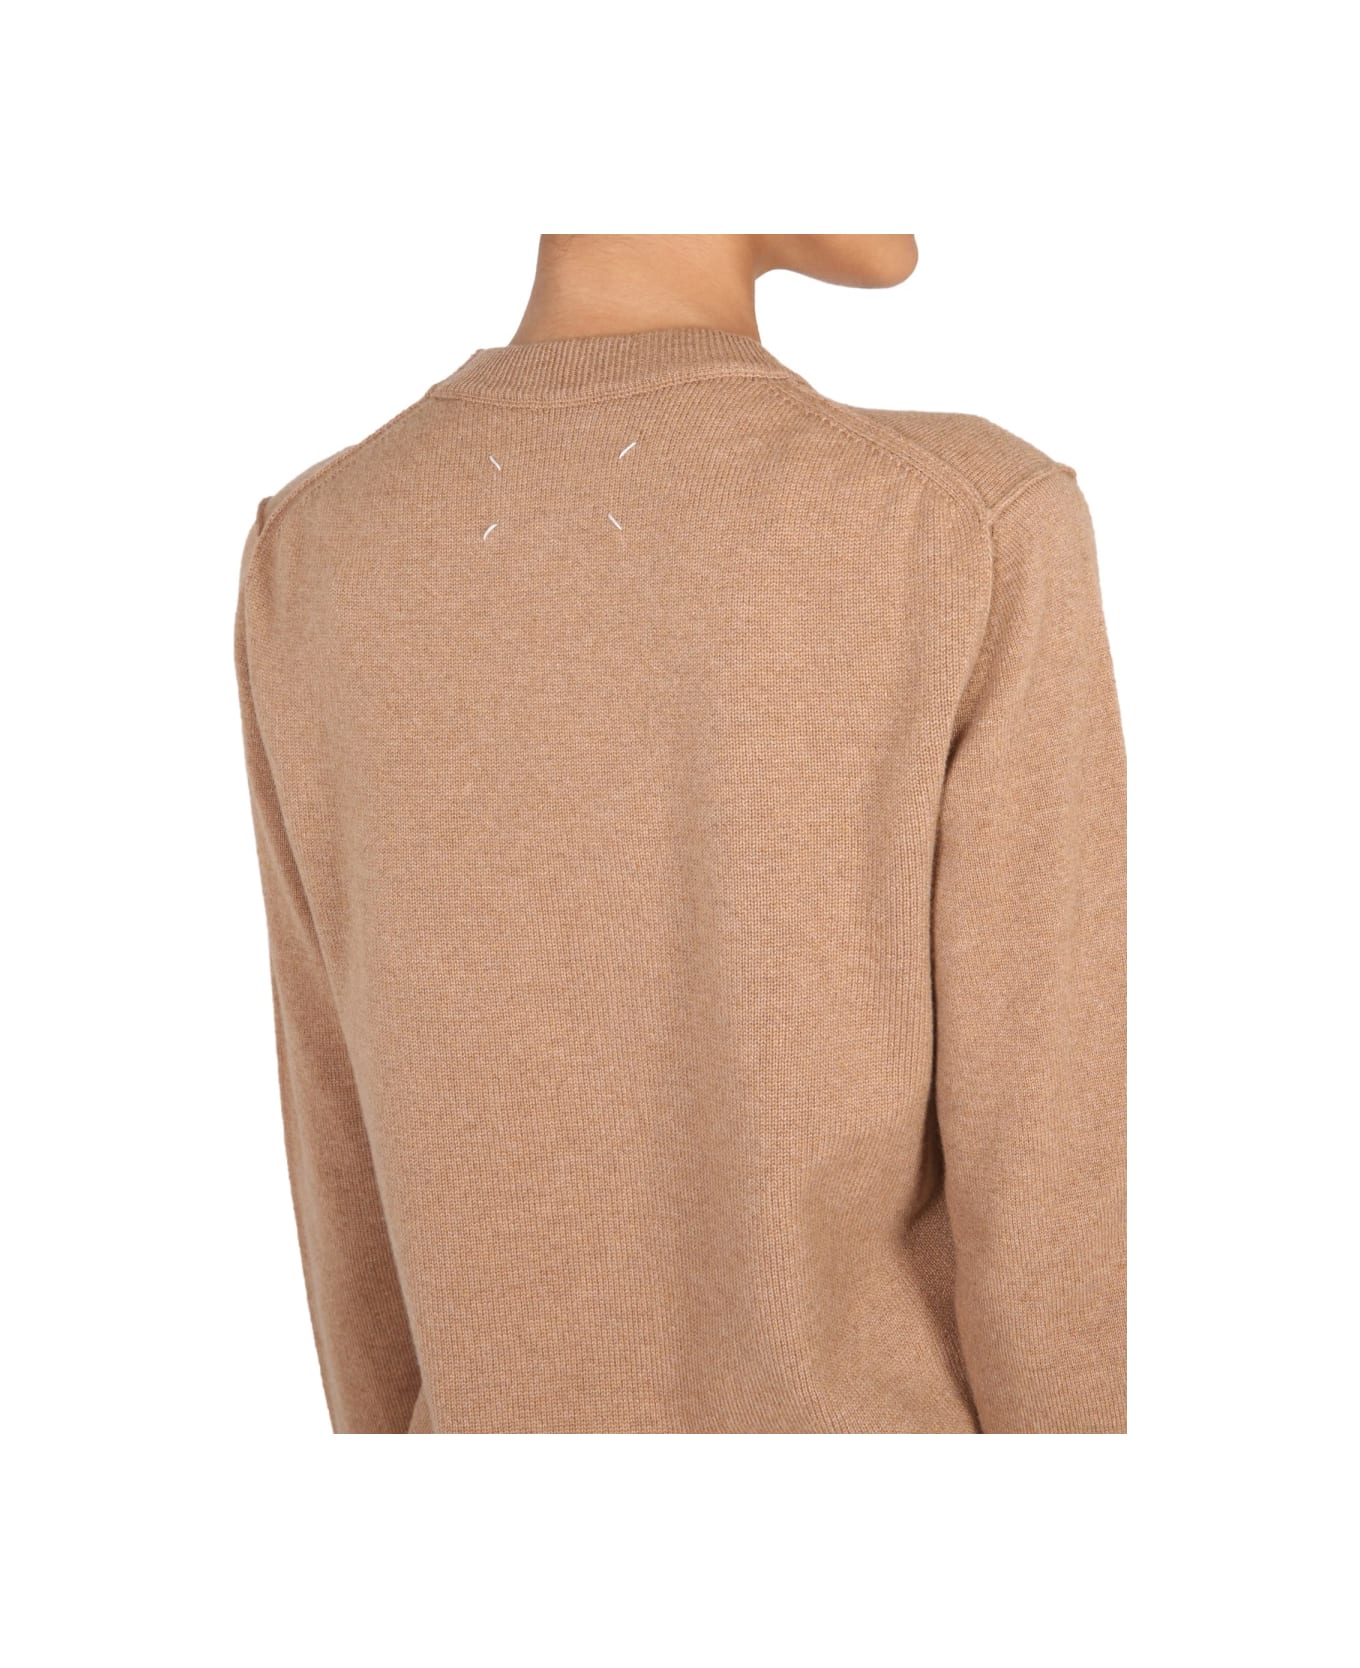 Maison Margiela Cashmere Sweater - BEIGE ニットウェア